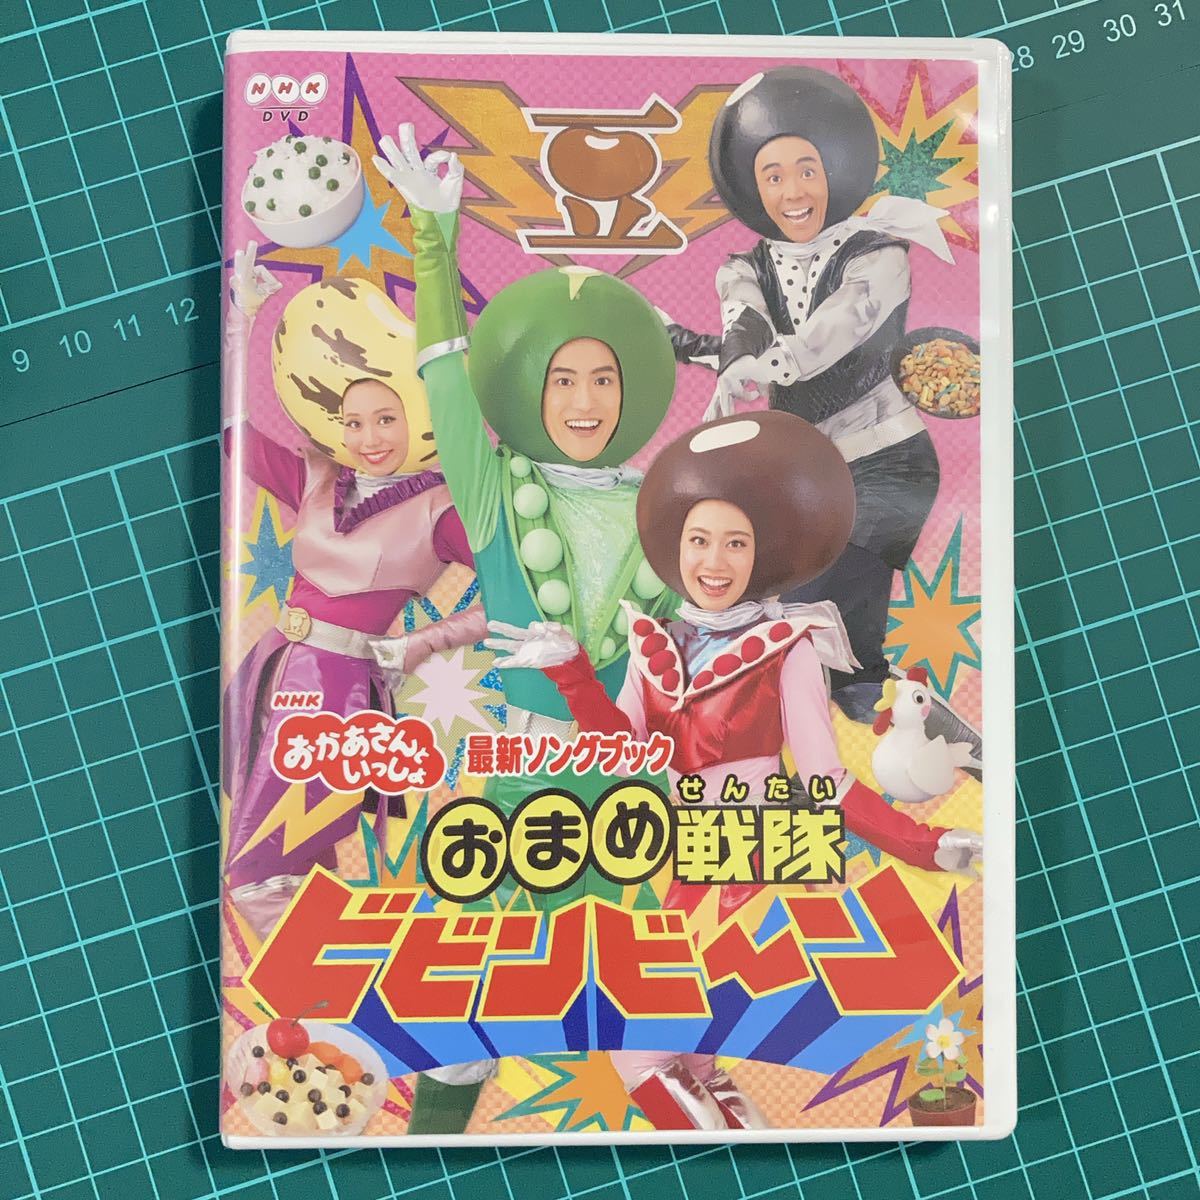 DVD NHK おかあさんといっしょ 最新ソングブック おまめ戦隊ビビンビーン